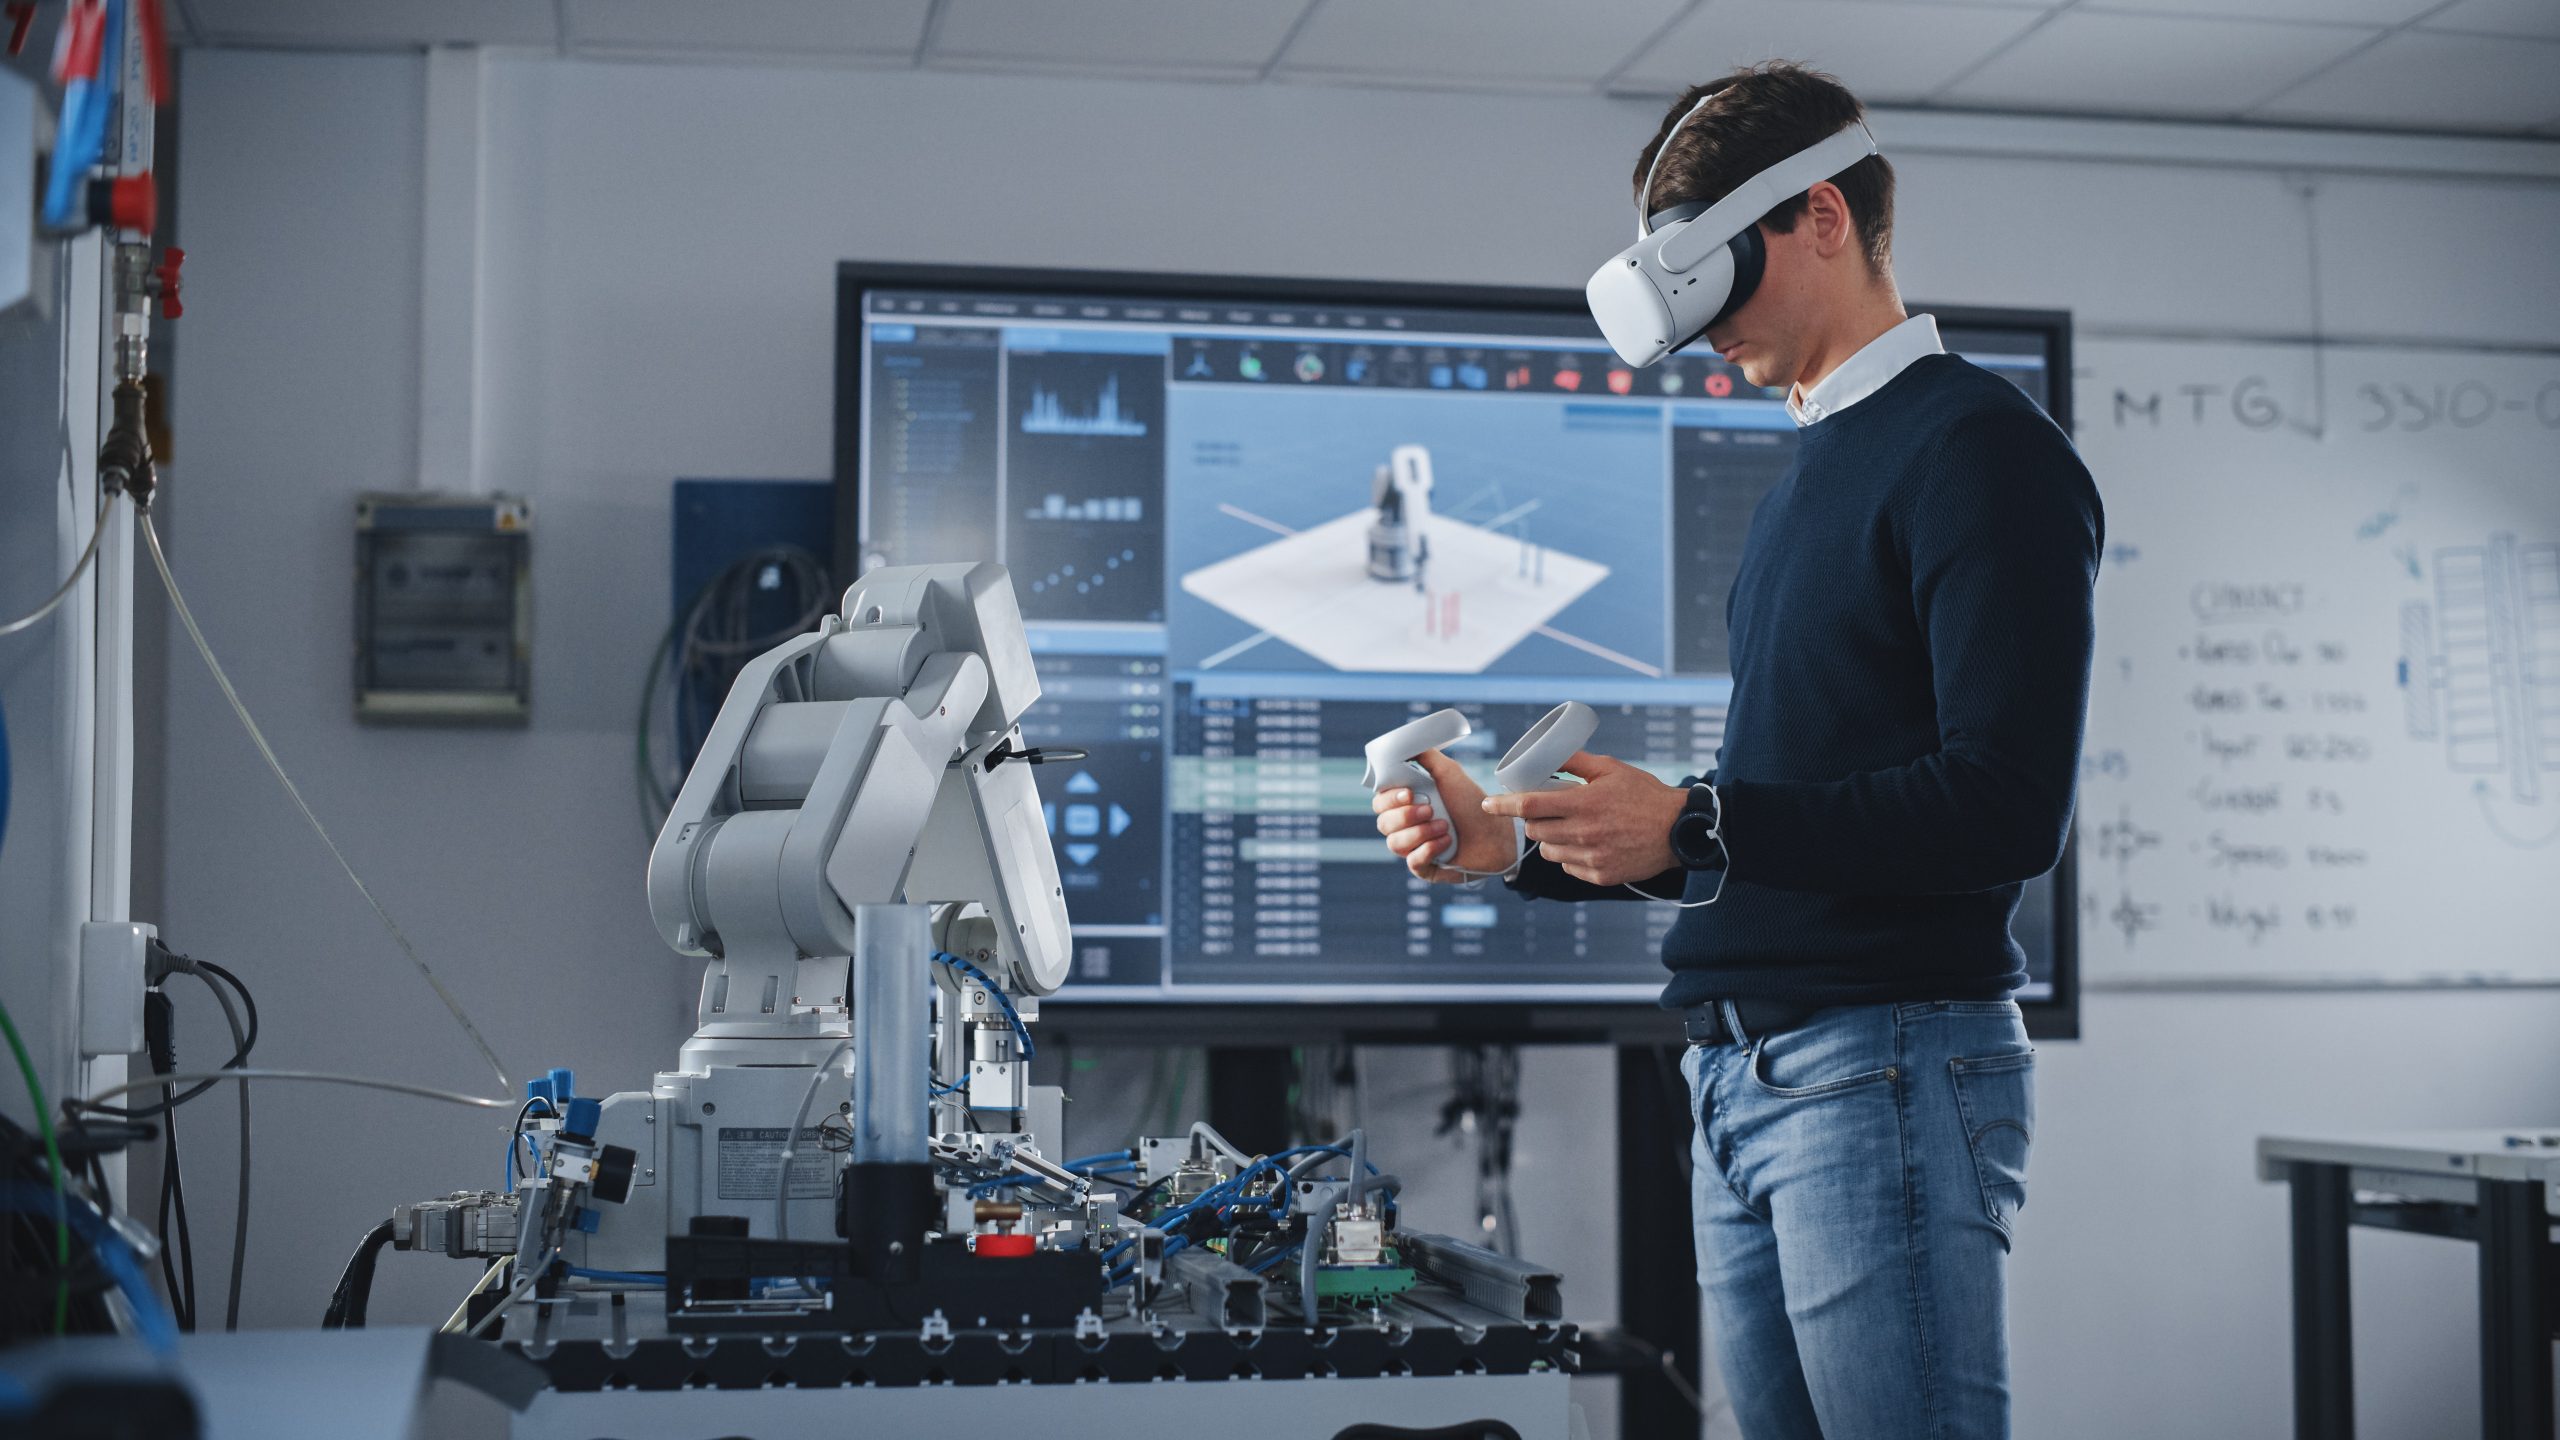 Dans la salle de classe d'une université de haute technologie, un homme portant un casque de RV et tenant des contrôleurs est concentré sur ses études en robotique.